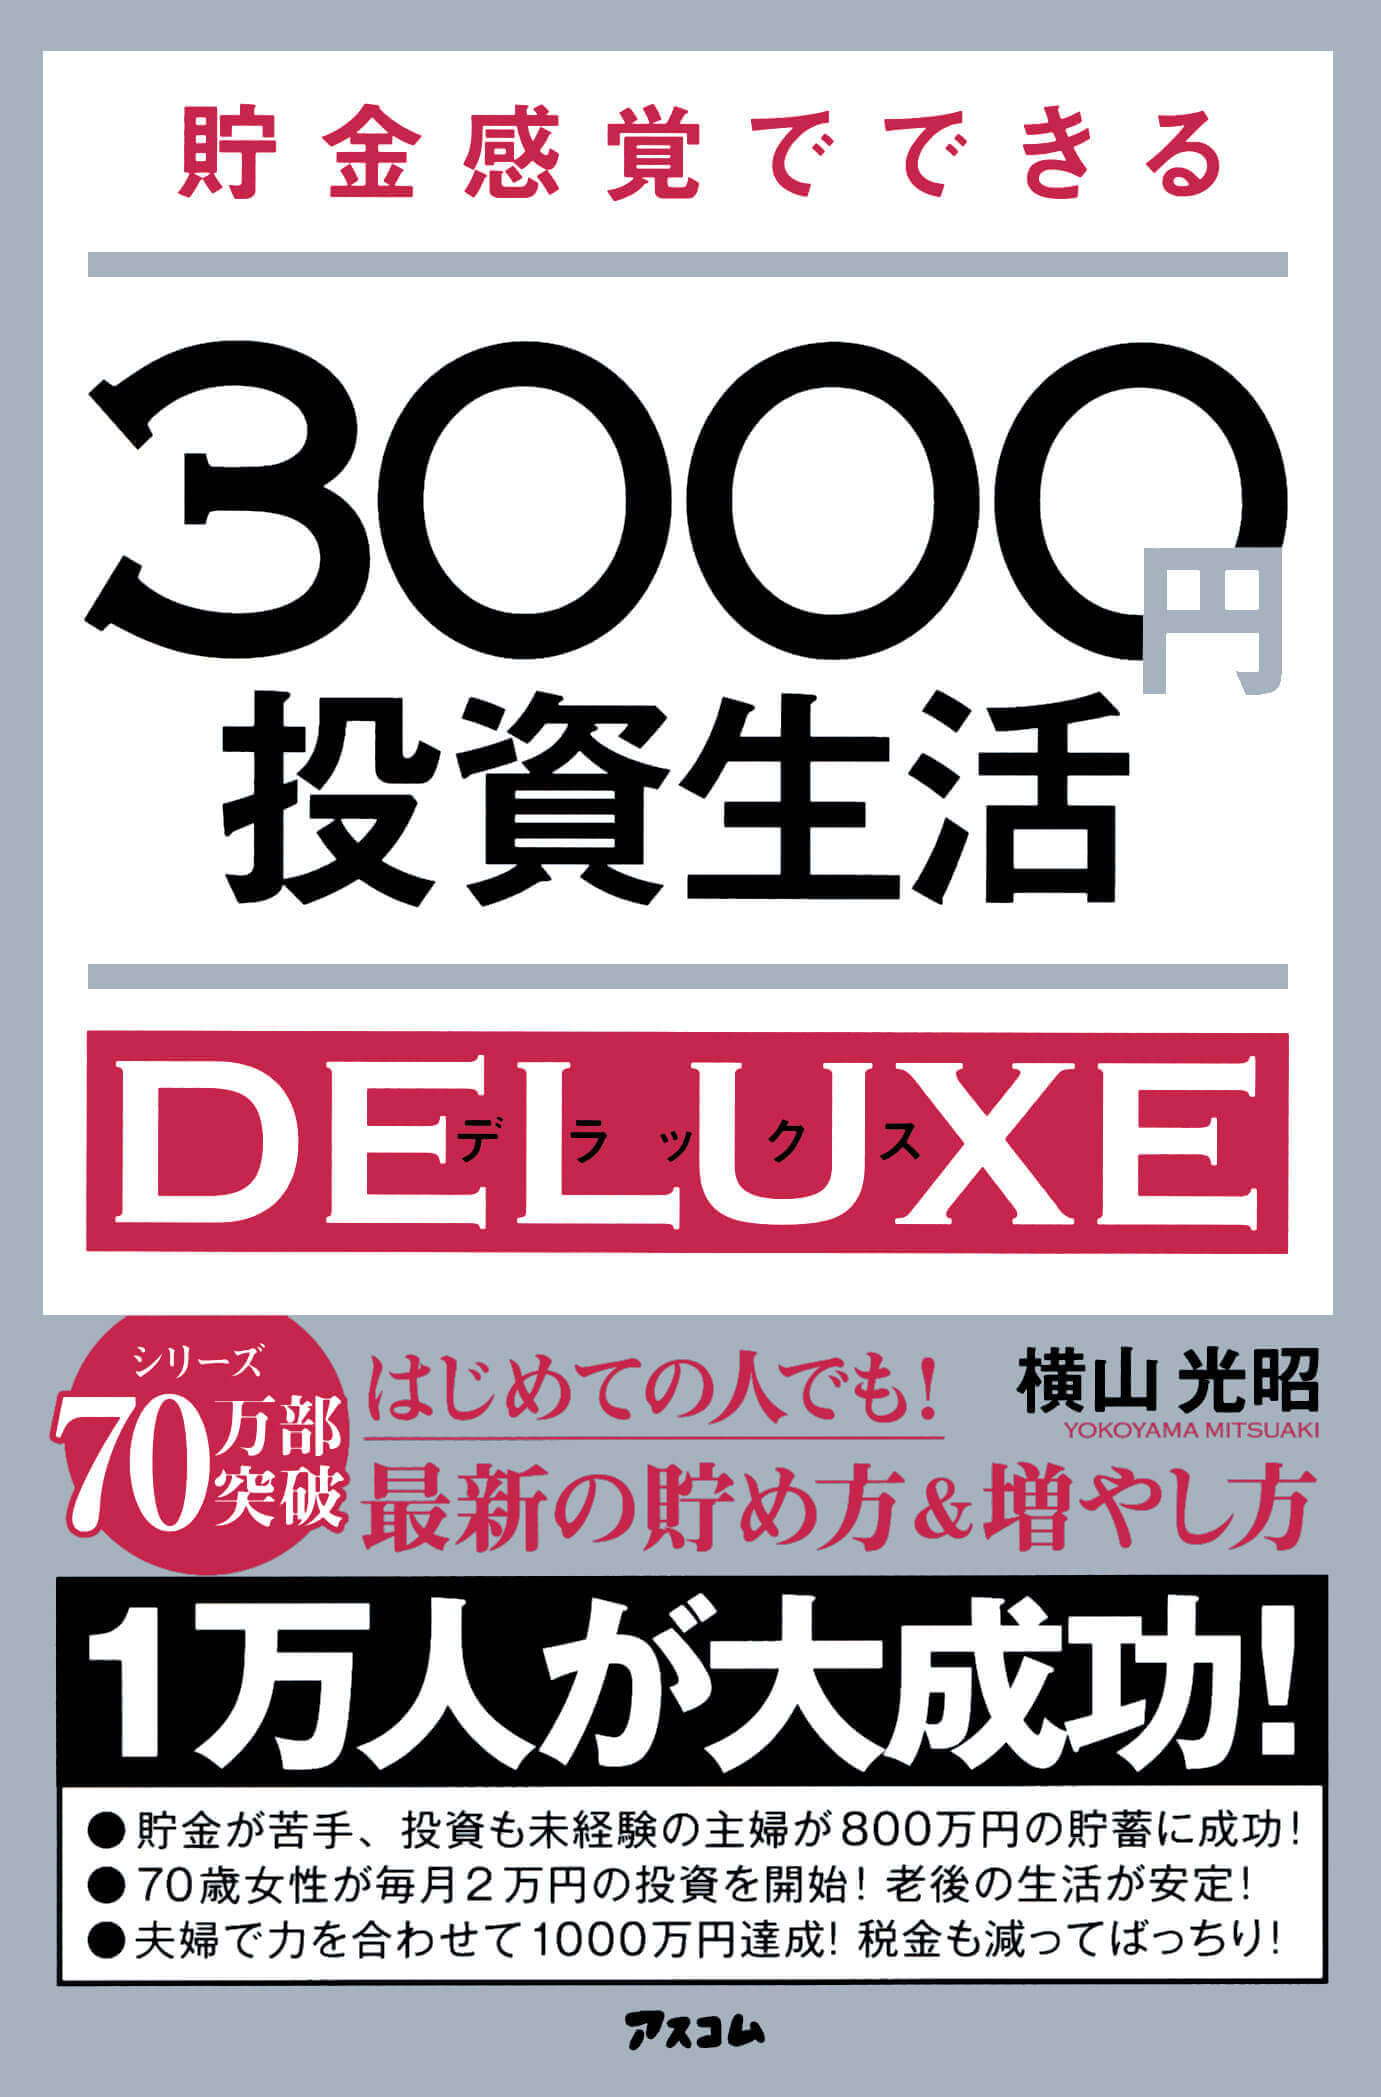 横山光昭さんの著書『貯金感覚でできる3000円投資生活デラックス』